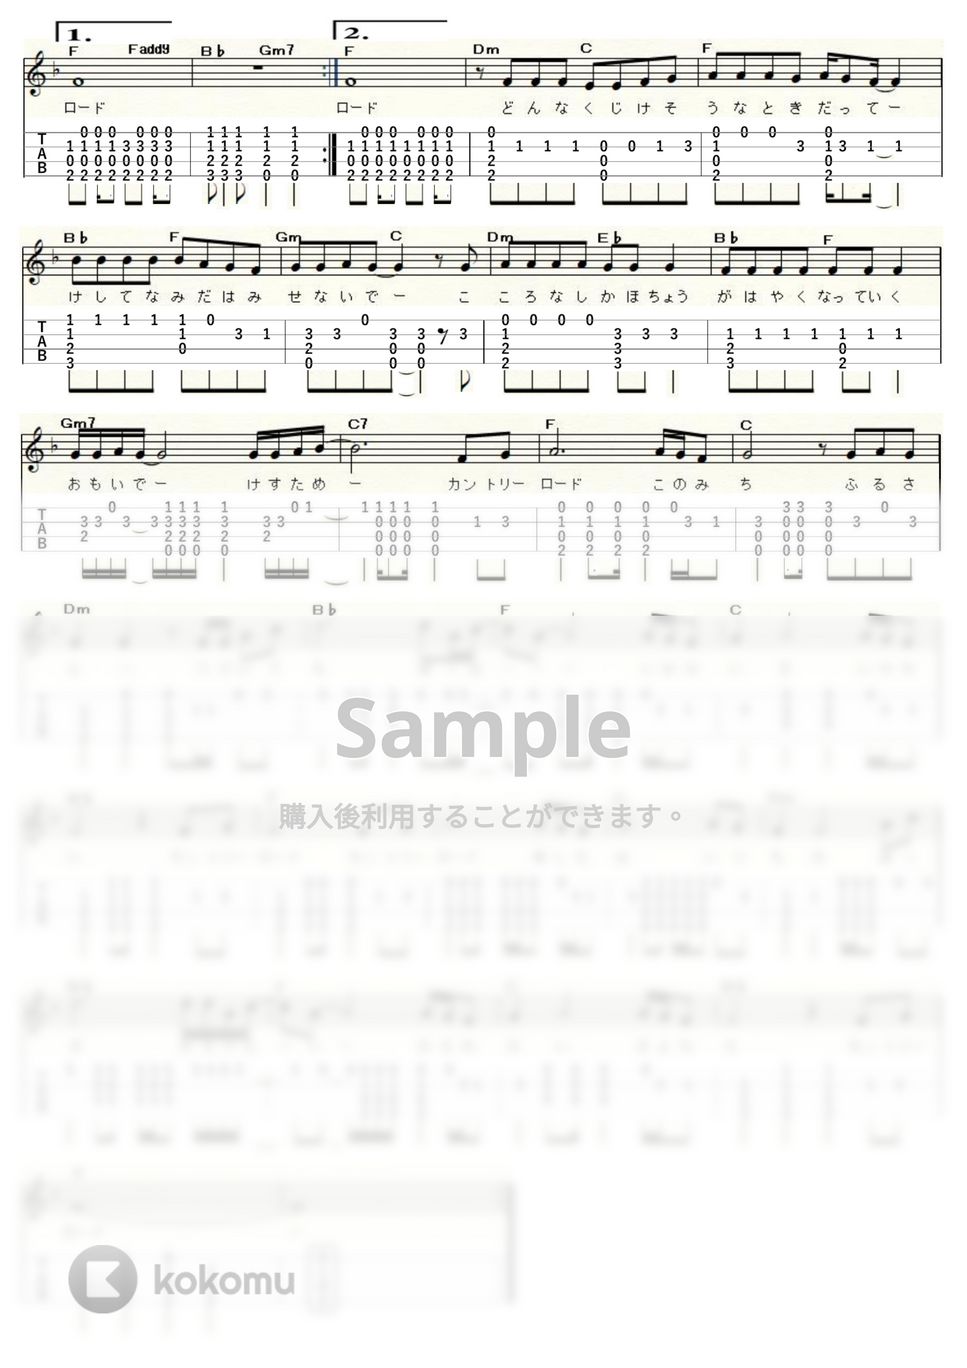 ジョン・デンバー - カントリー・ロード (ｳｸﾚﾚｿﾛ / High-G,Low-G / 中級) by ukulelepapa